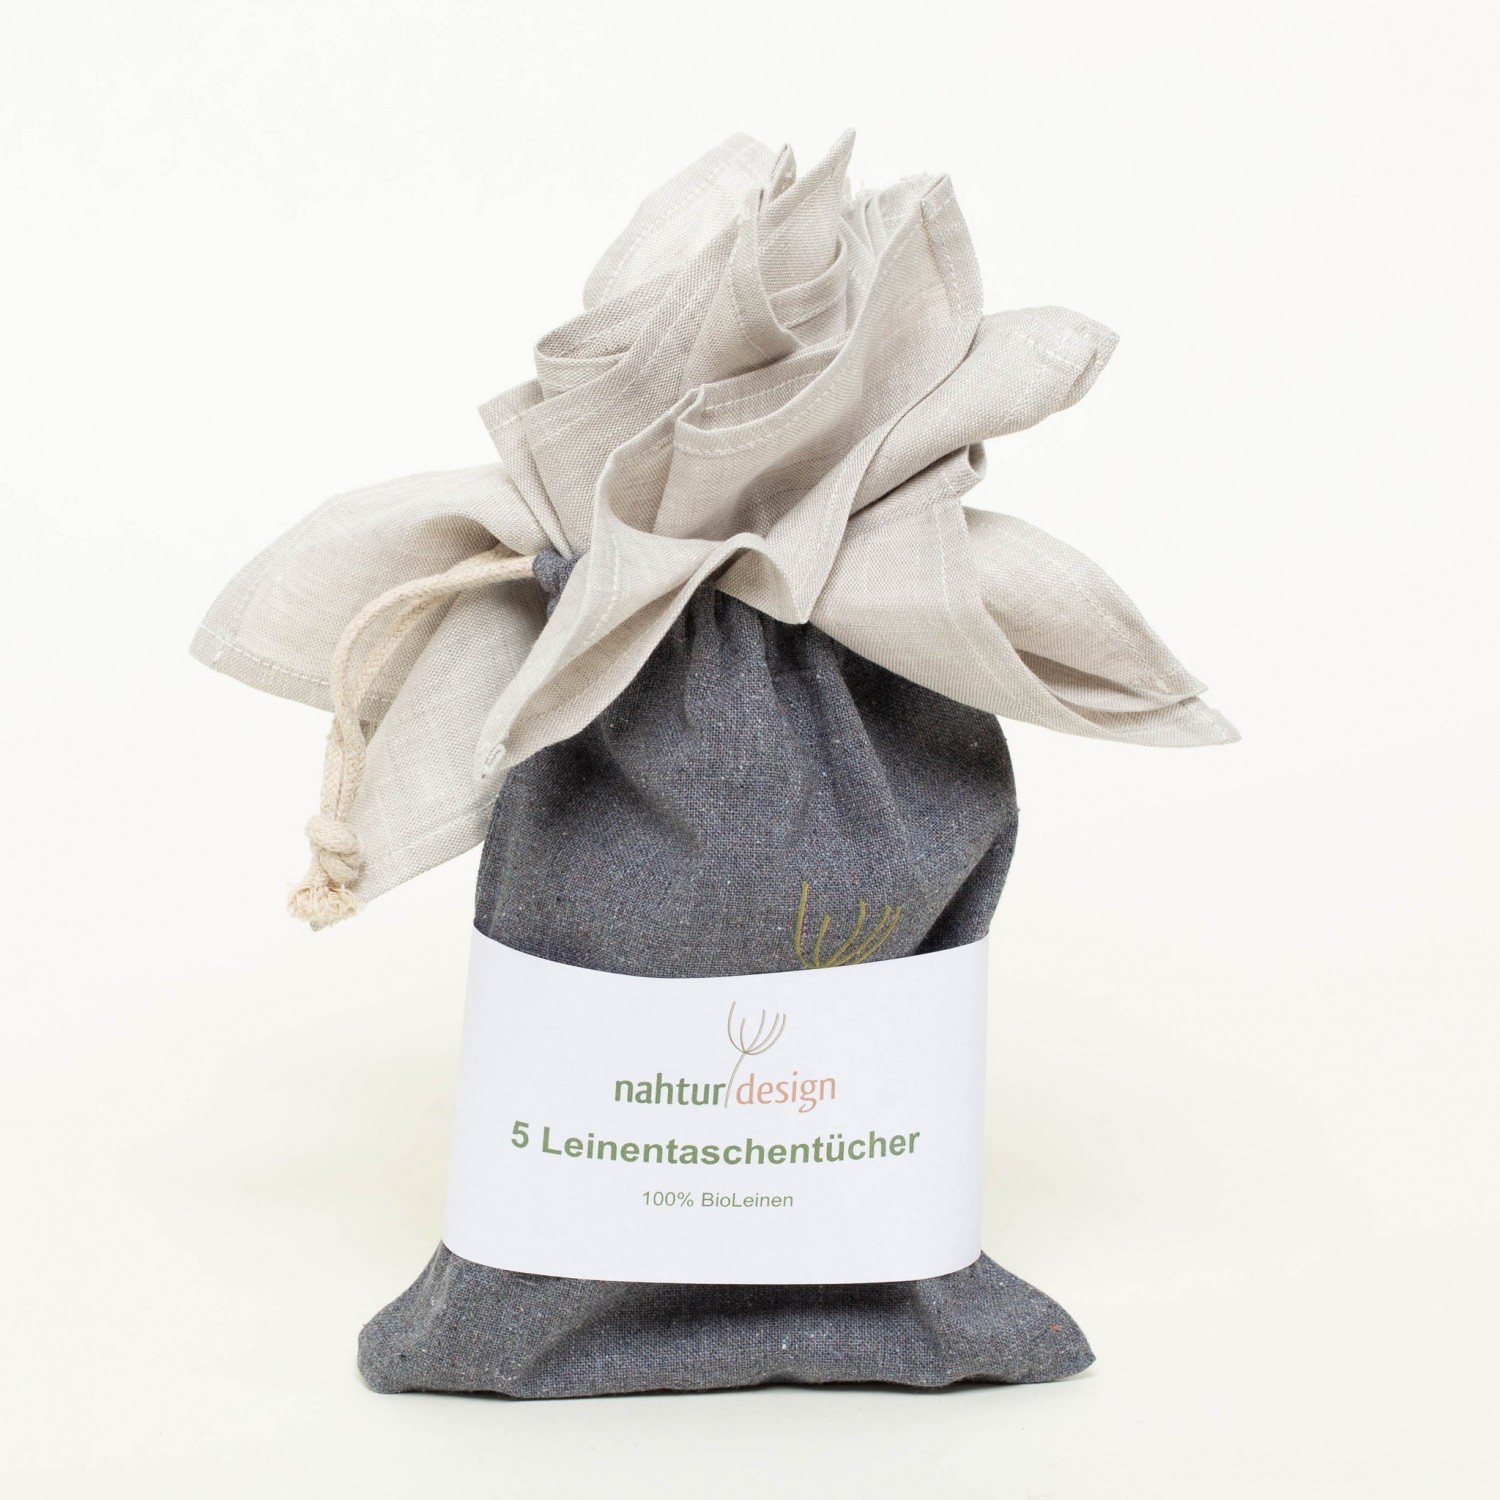 Stofftaschentücher aus Bio-Leinen » nahtur-design